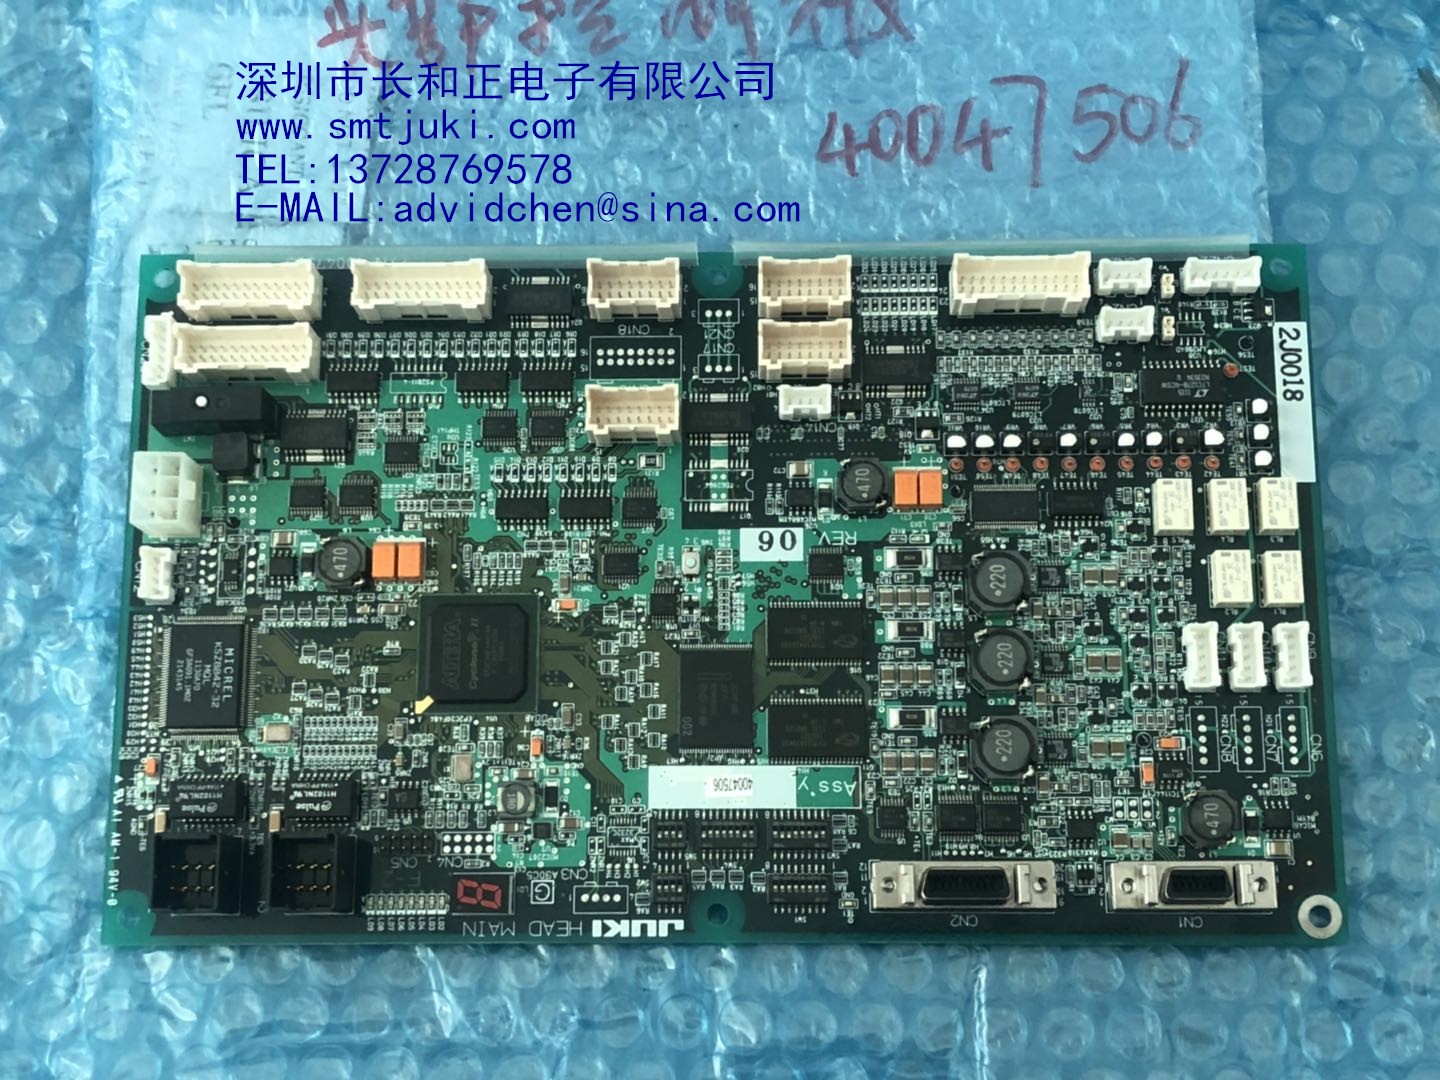 JUKI FX-3 HEAD-MAIN PCB 40047506